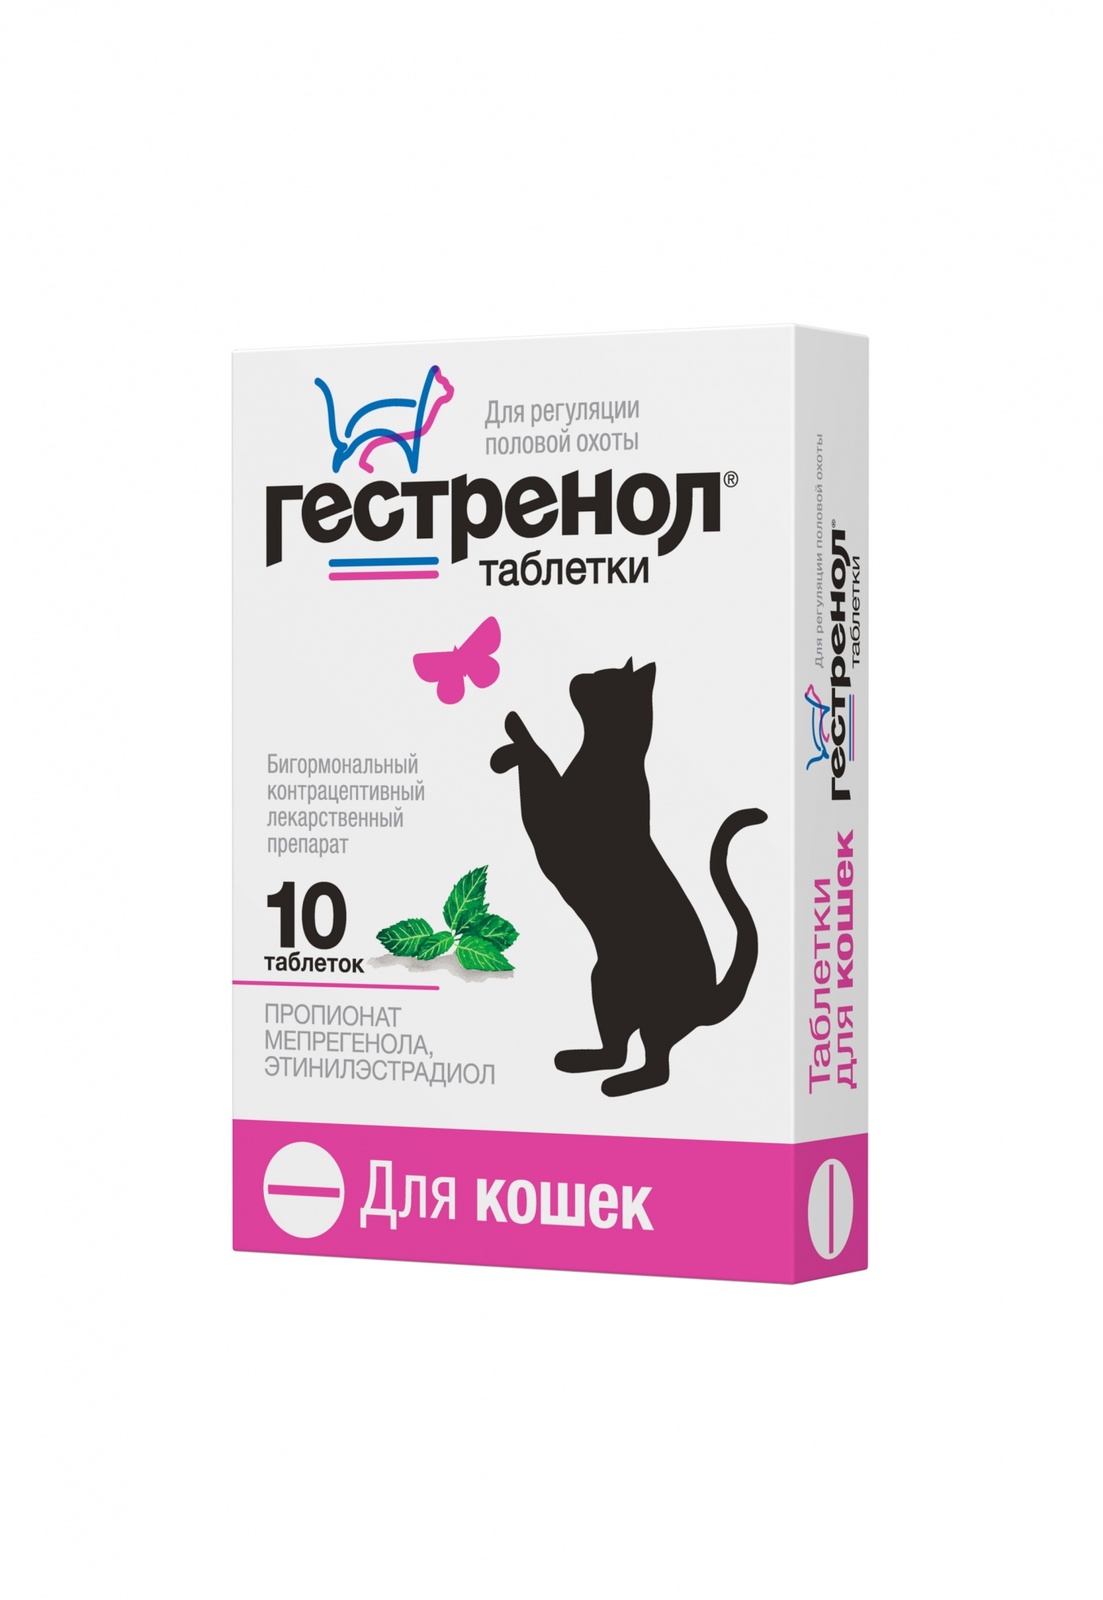 таблетки для кошек курс успокоин для снижения возбуждения 16 табл Астрафарм Астрафарм гестренол таблетки для кошек для регуляции половой охоты, 10 таб. (7 г)